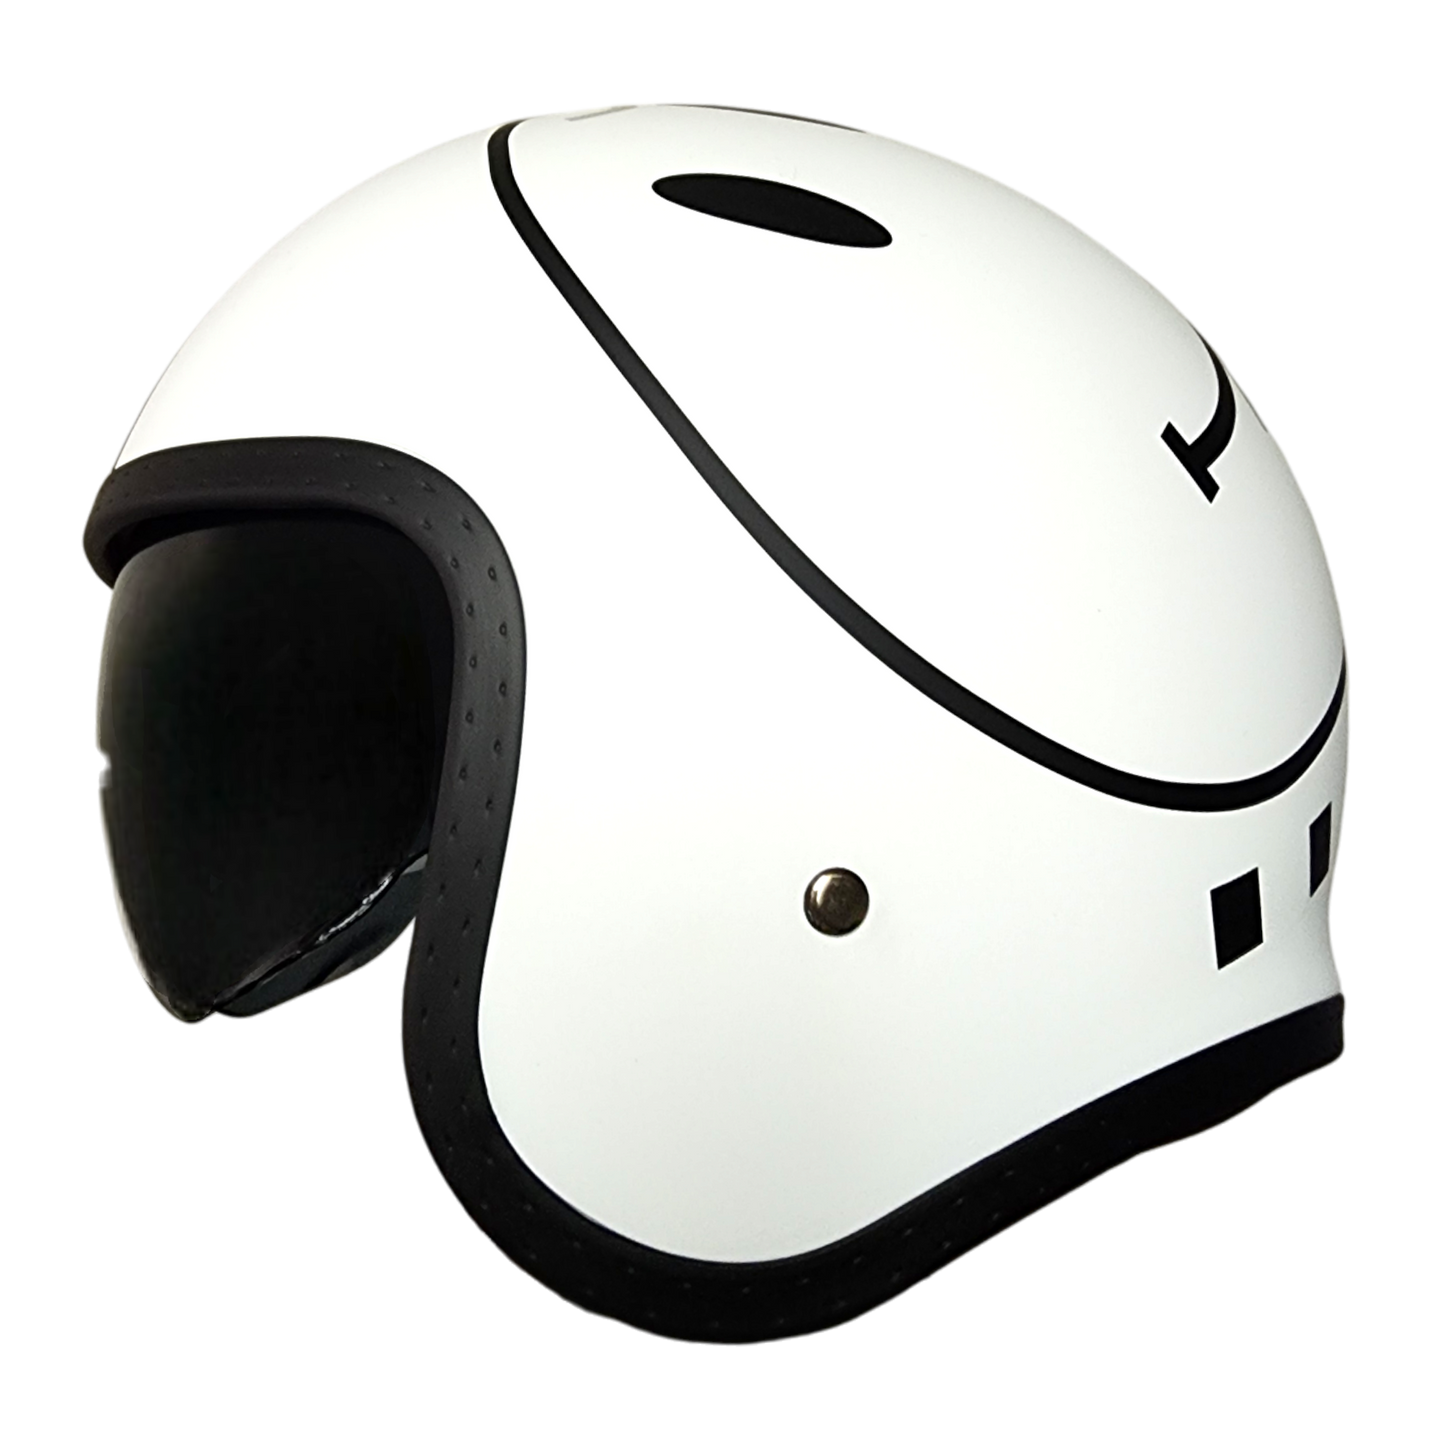 Vega Helmet USA - V8 Retro Style Open Face Helmet